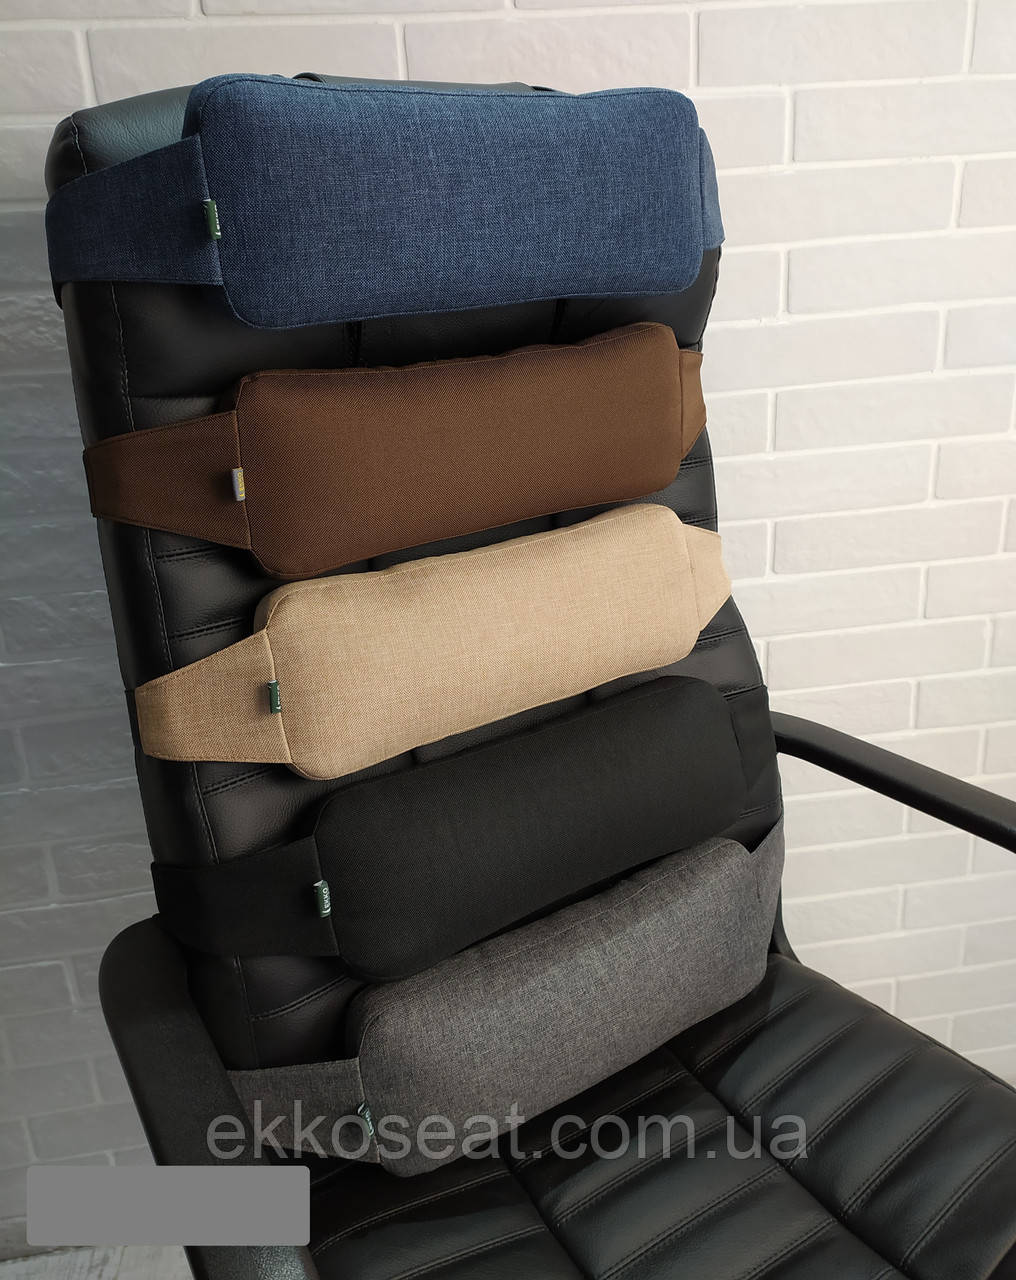 Ортопедична подушка під поперек EKKOSEAT для офісних та комп'ютерних крісел. Універсальна